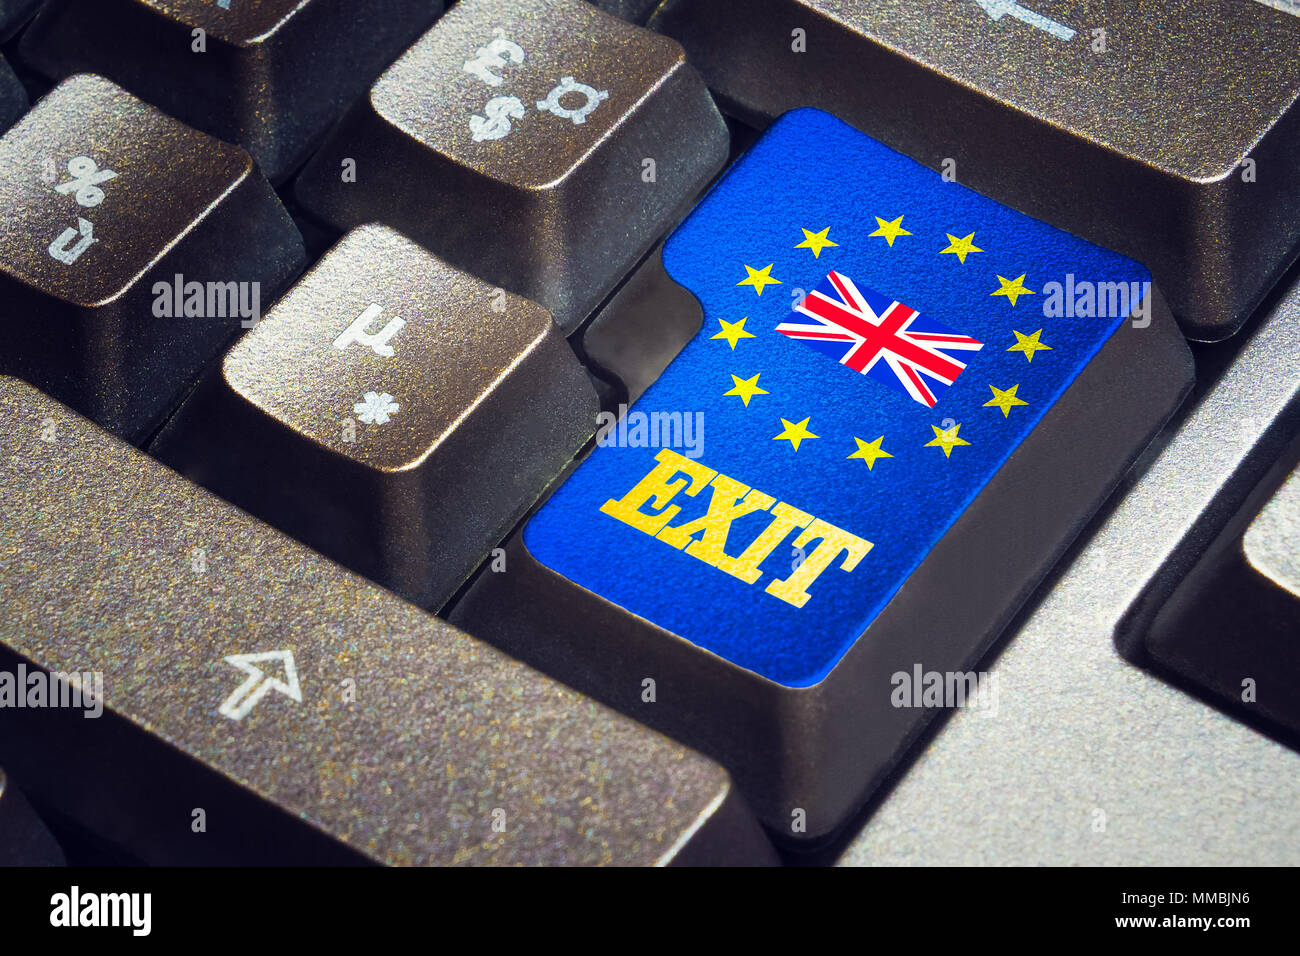 Bouton-poussoir de sortie sur un clavier noir avec le drapeau britannique au milieu du drapeau européen étoiles. Brexit concept. Banque D'Images